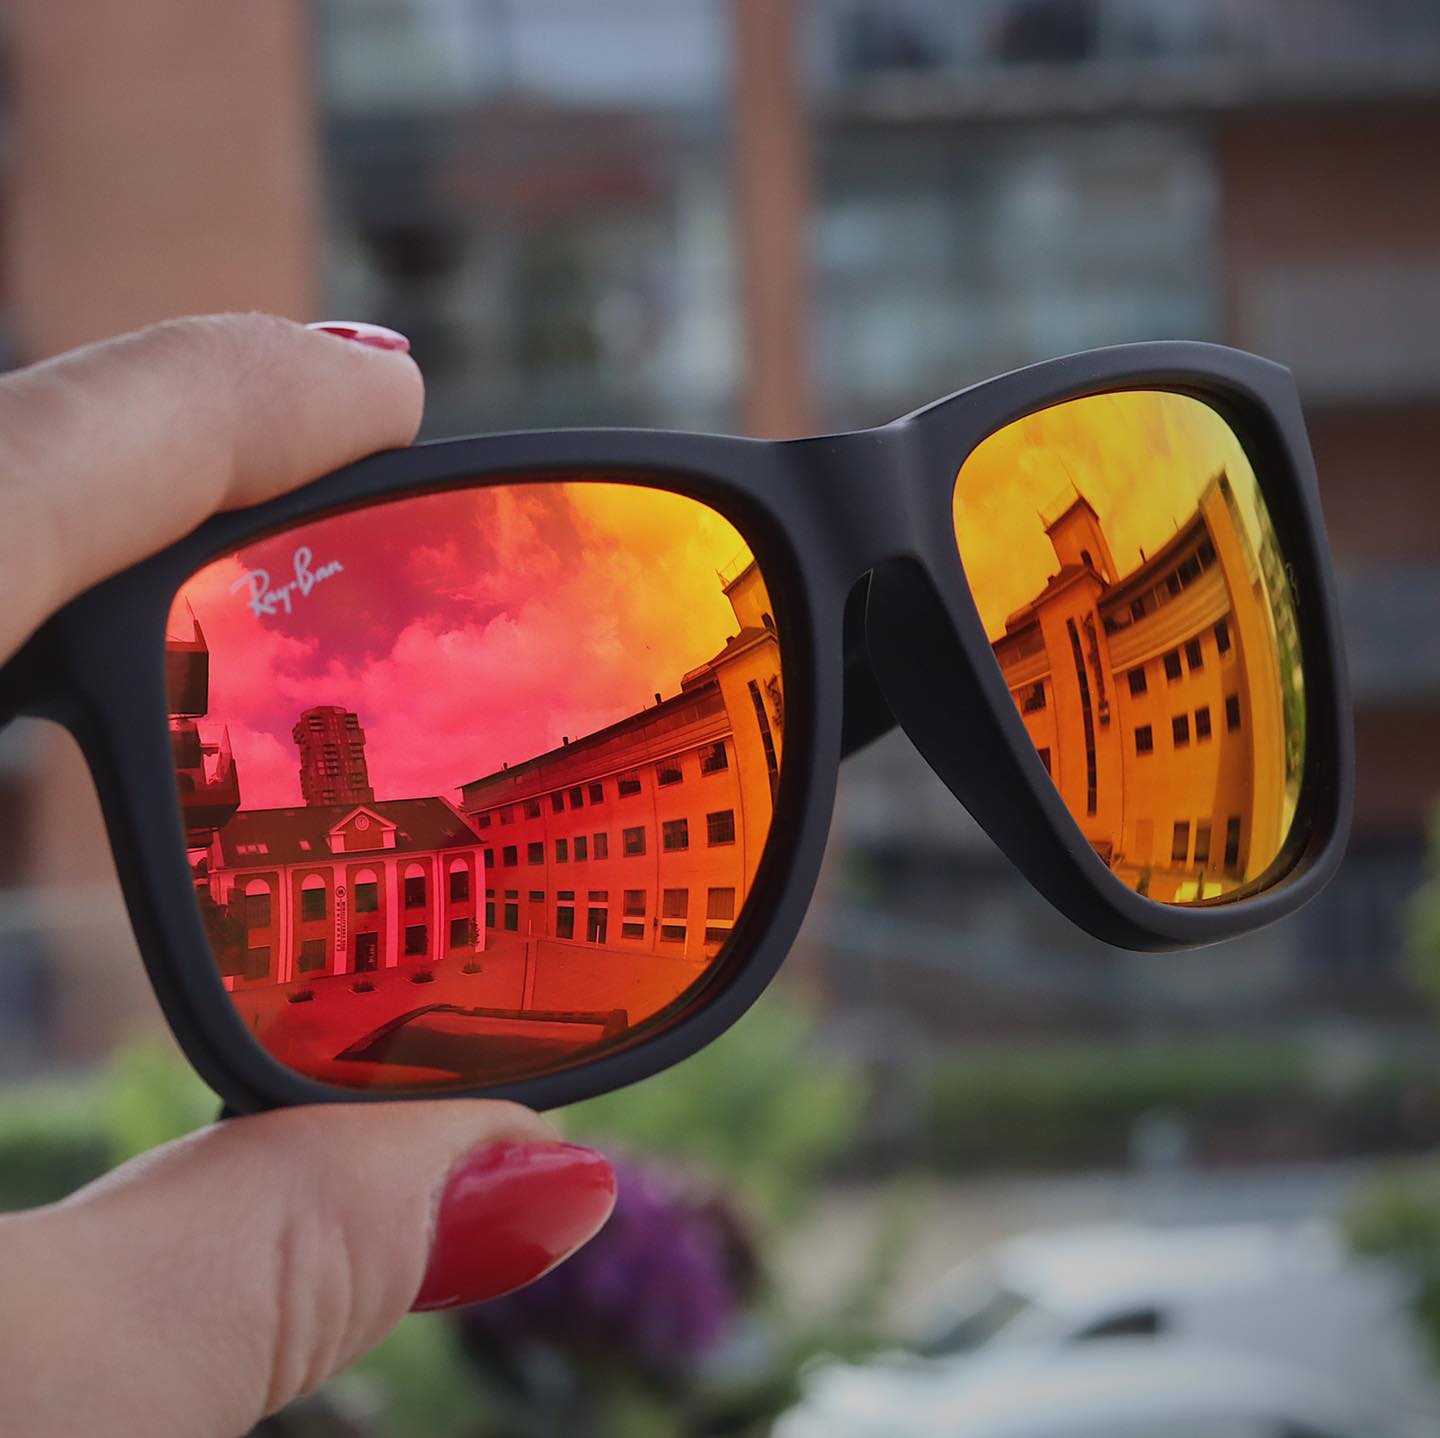 - Køb solbriller med styrke online os Farstad